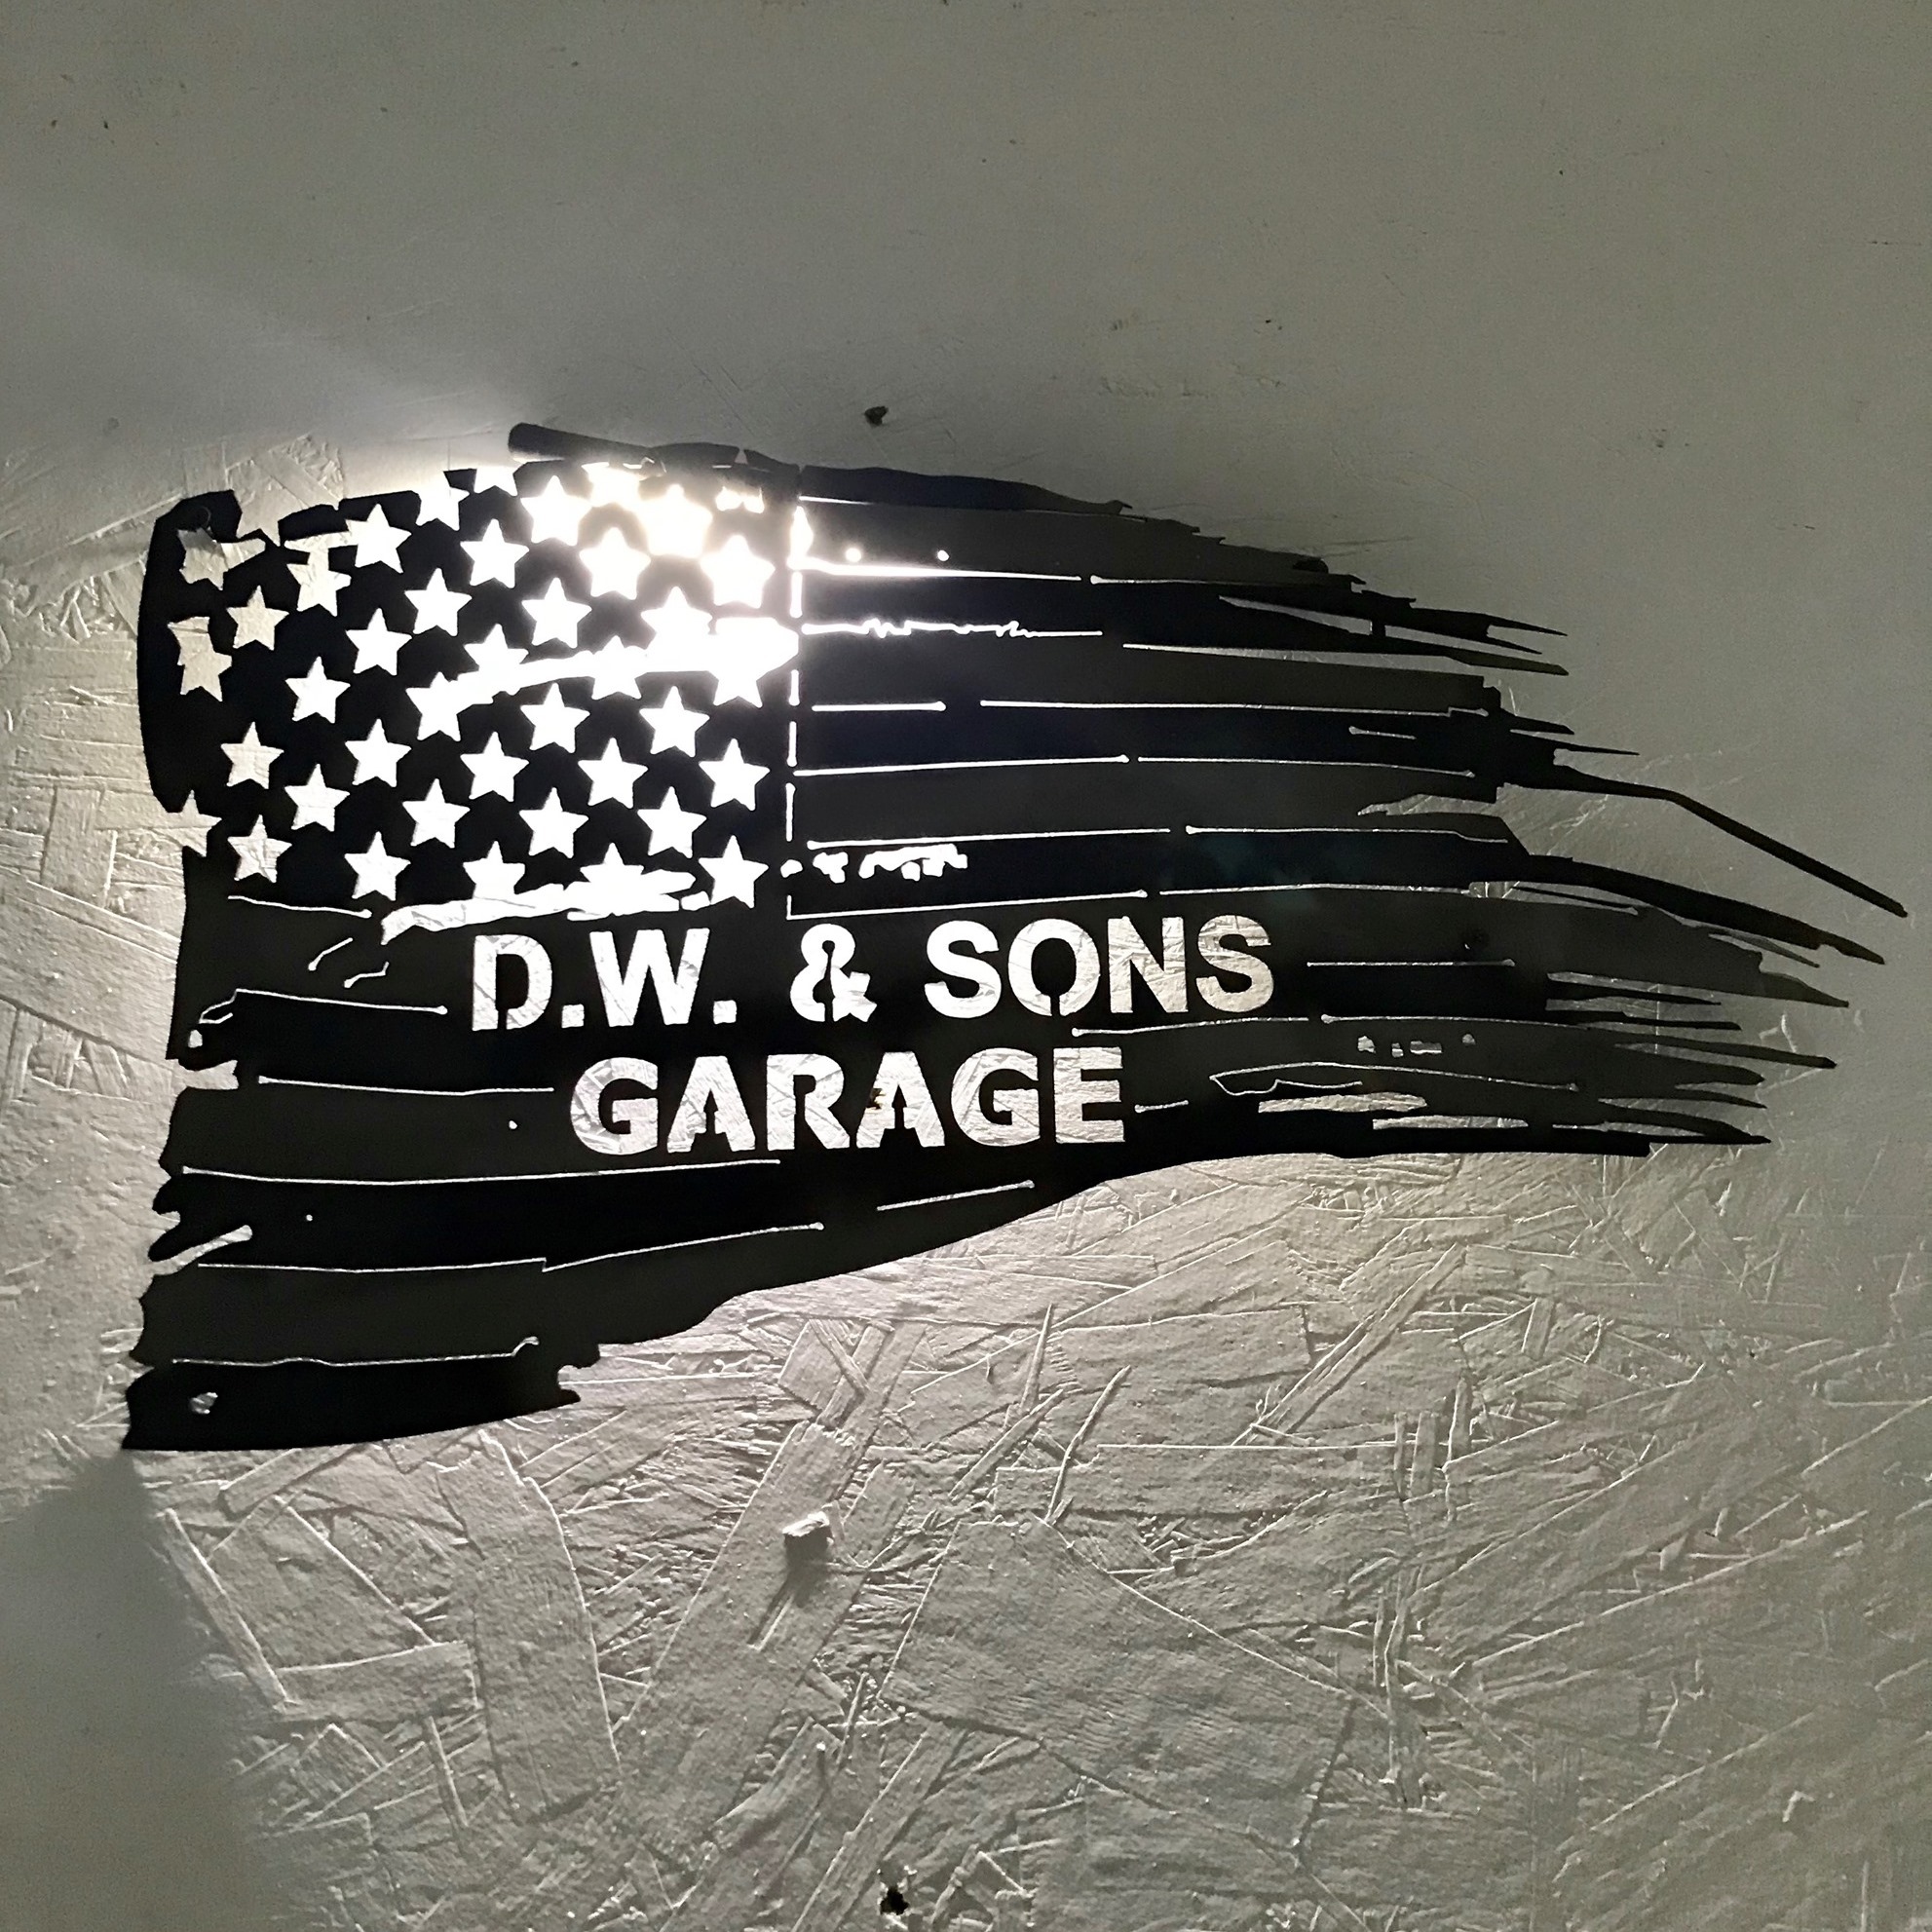 D.W. & Sons Garage